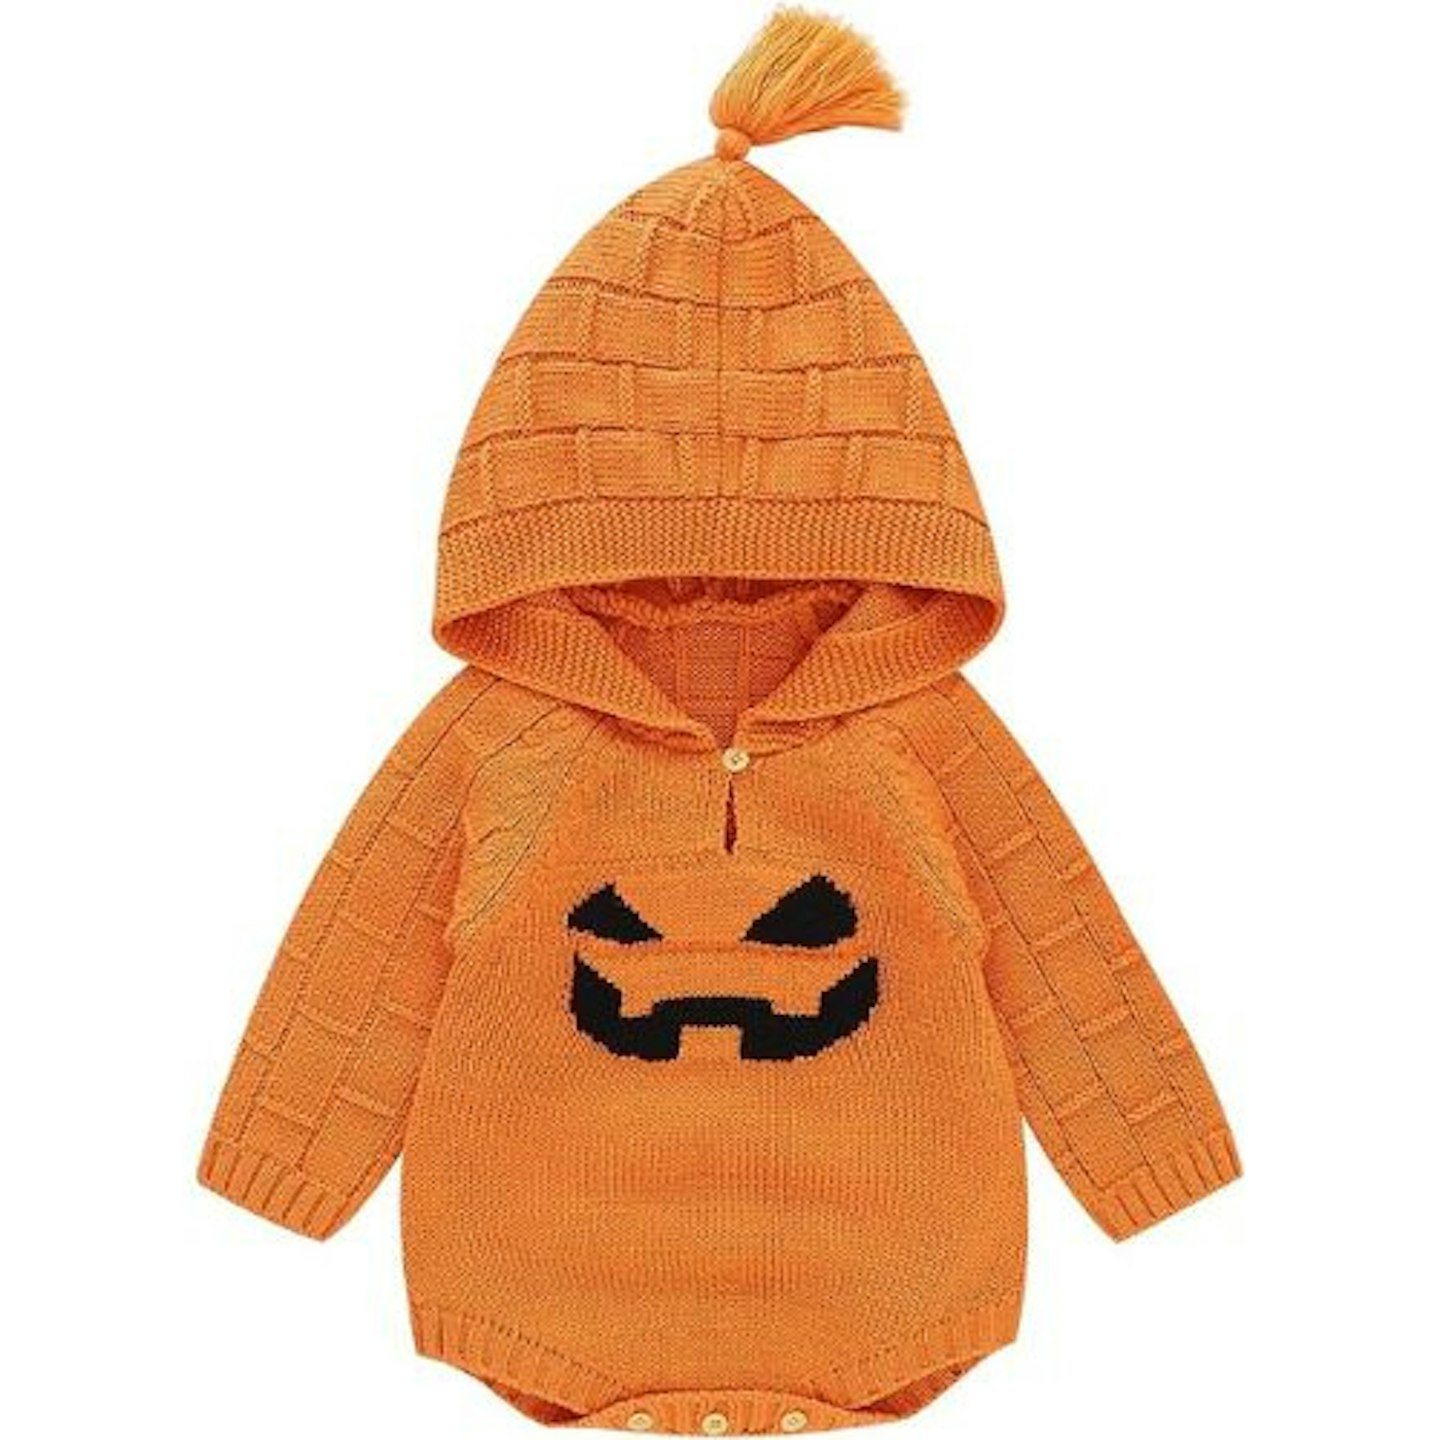 Best baby pumpkin costumes mimixiong Unisex Pumpkin Outfit